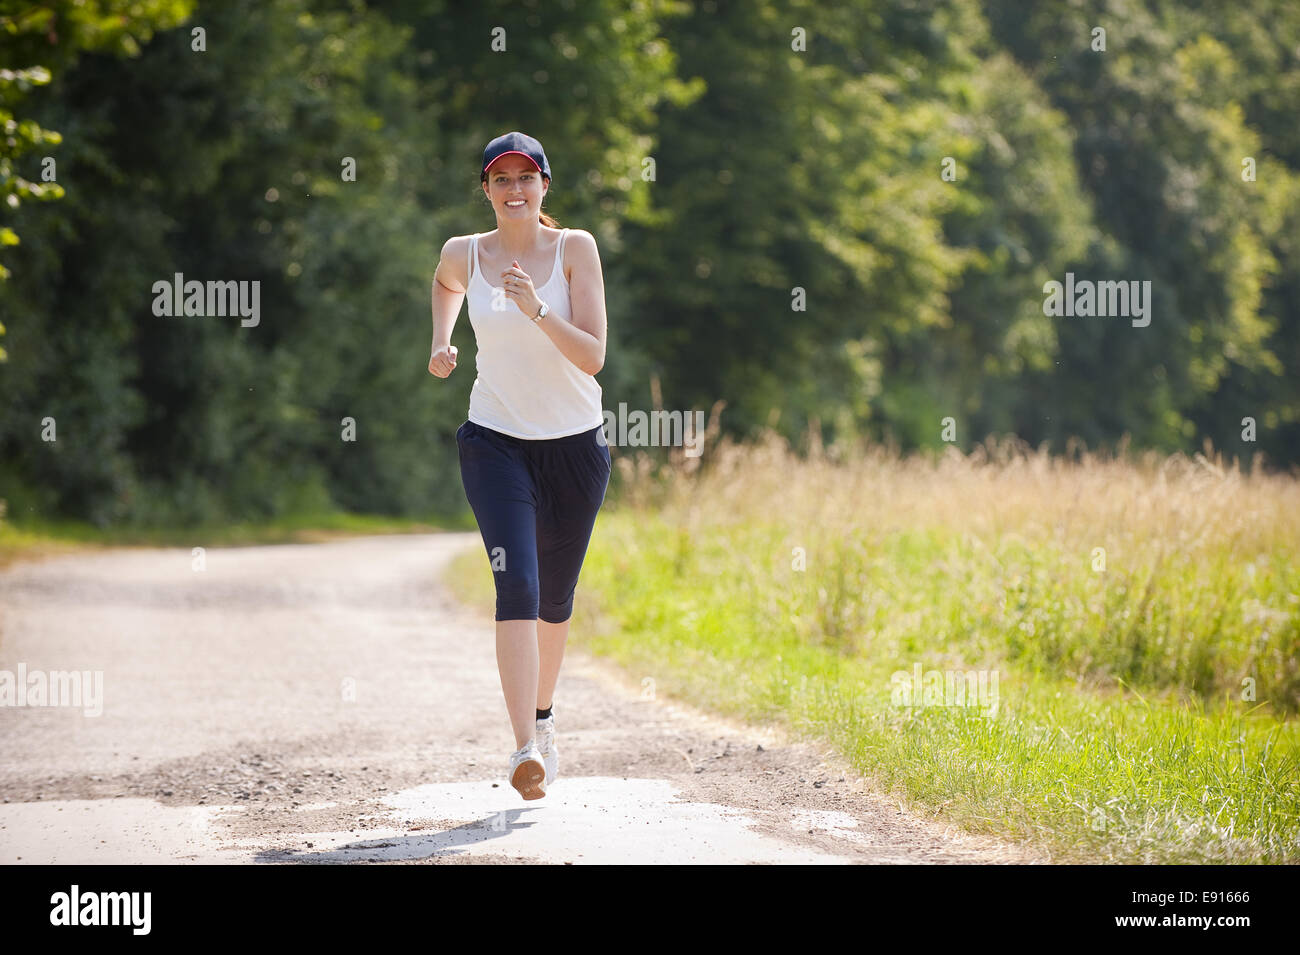 Jolie femme dans le jogging Banque D'Images